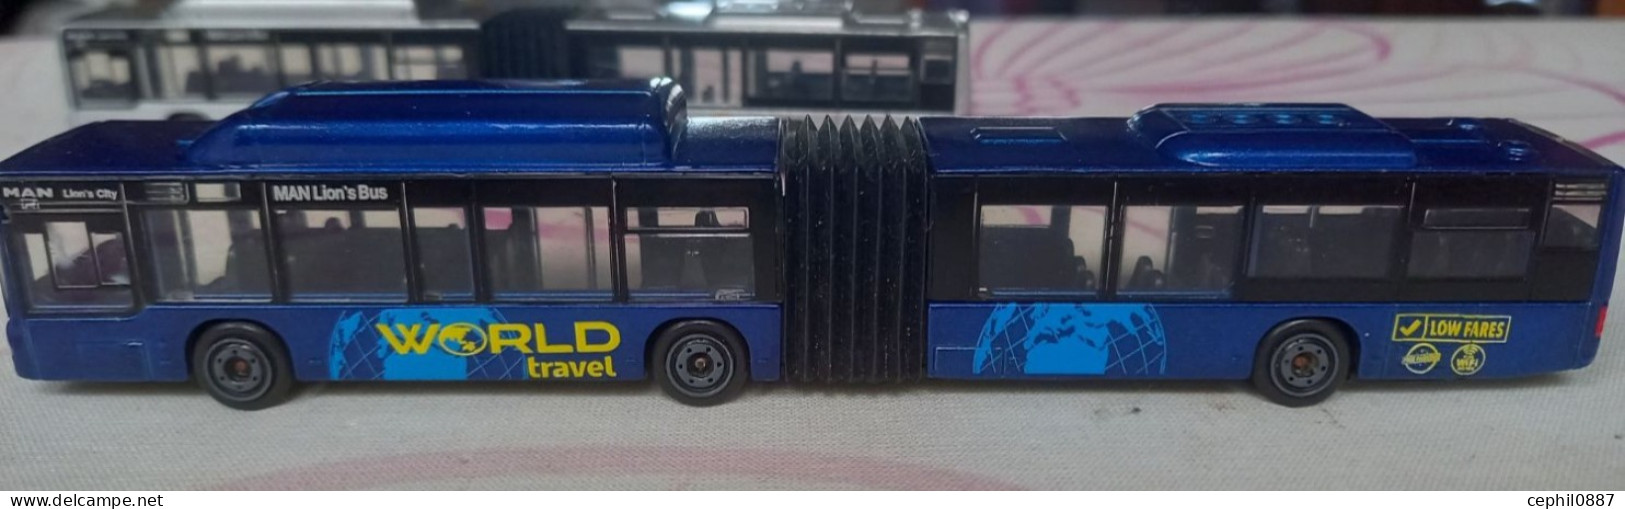 MAJORETTE: Double Bus MAN WORLD TRAVEL 1/110 - Camiones, Buses Y Construcción